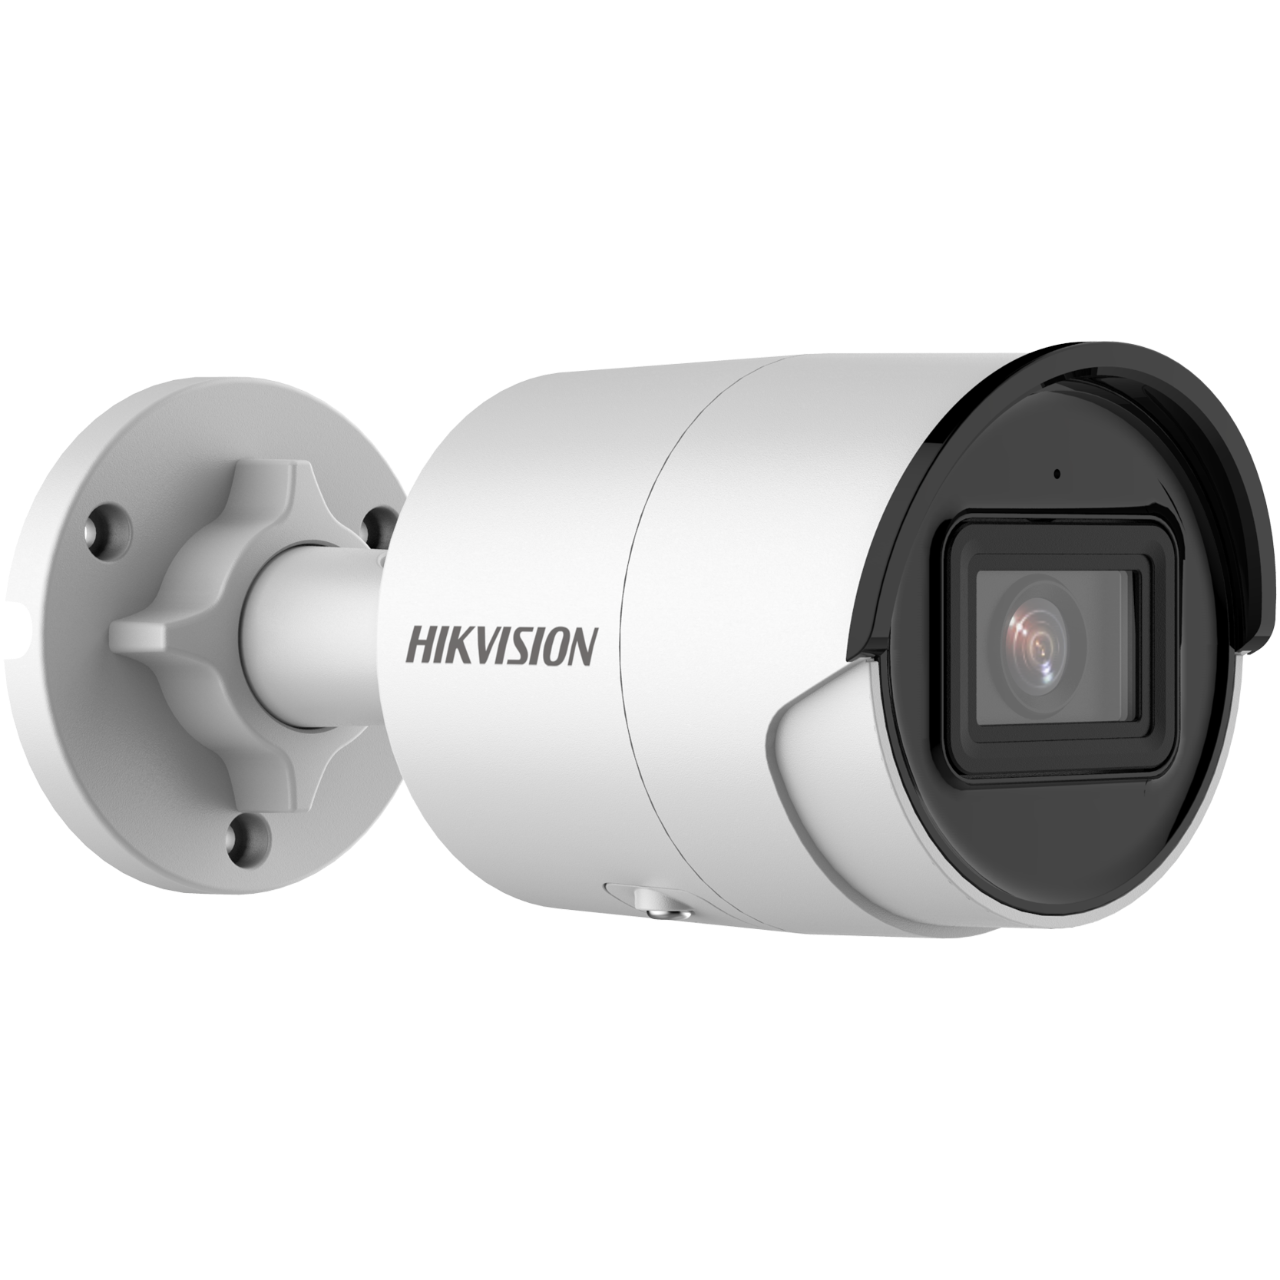 Hikvision DS-2CD3043G2-IU(2.8mm) 4MP Full HD IP Bullet Kamera 120dB WDR mit Mikrofon